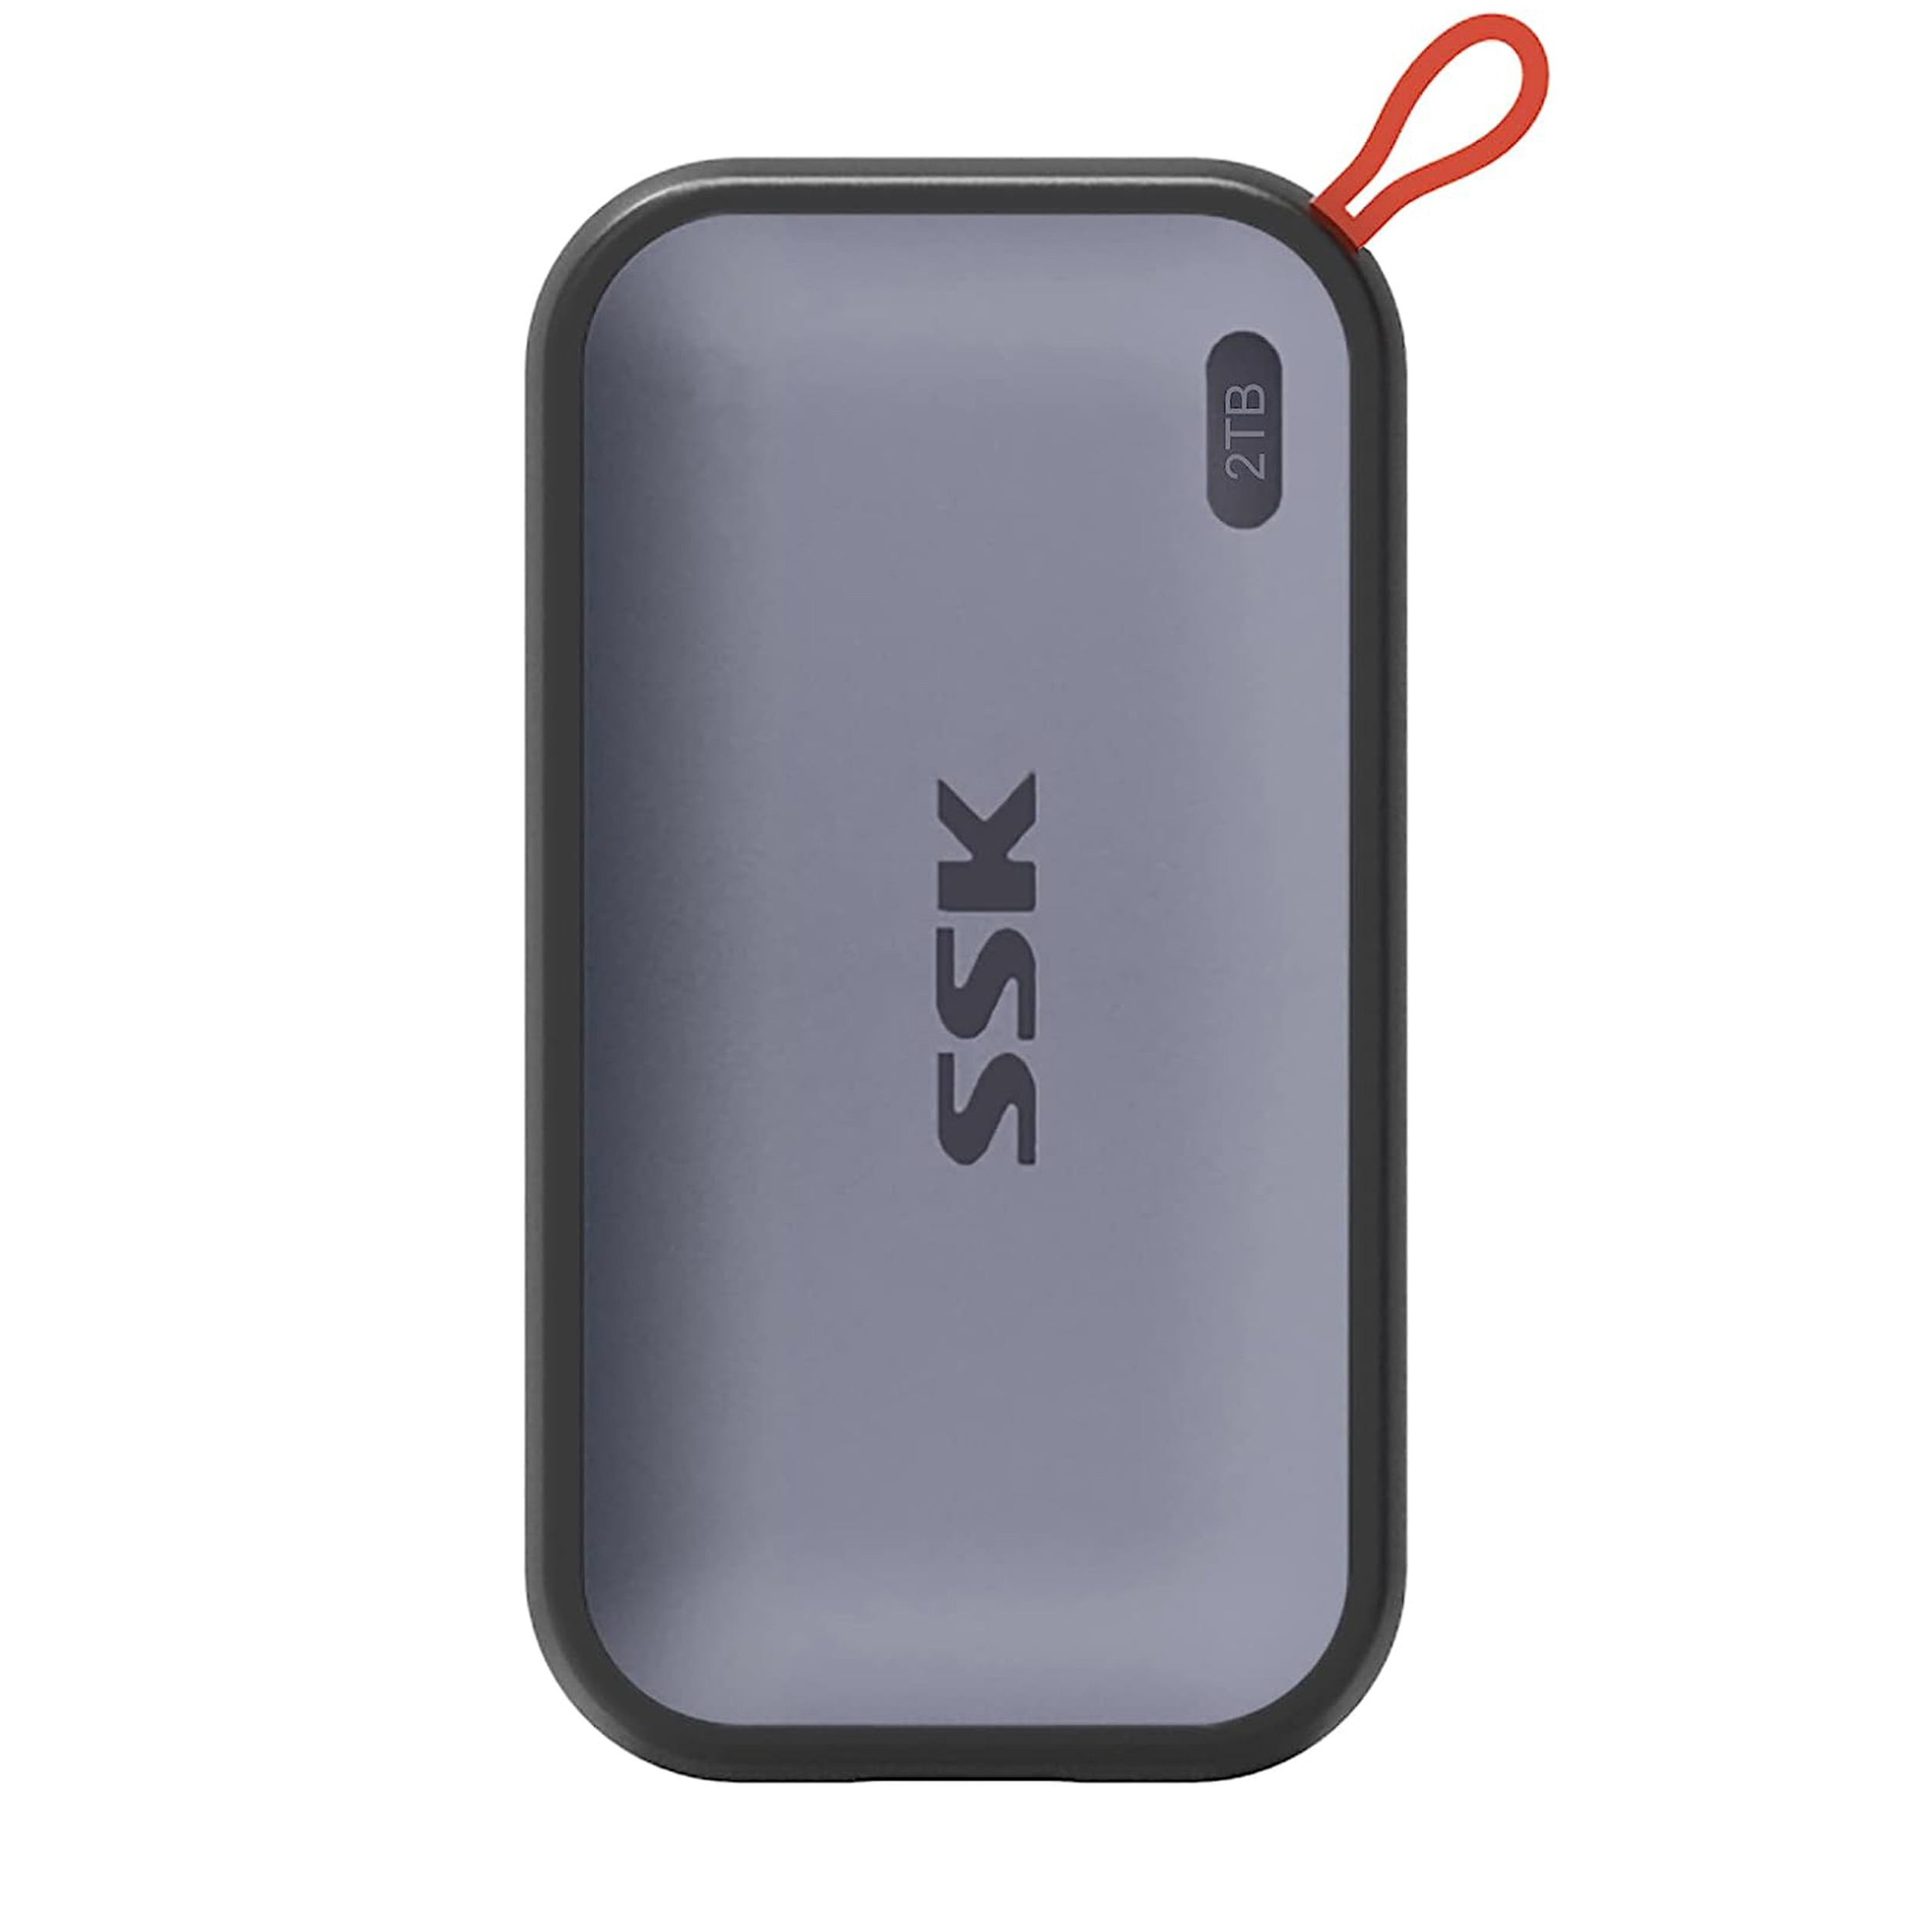 اس اس دی اکسترنال اس اس کا مدل SD500 PORTABLE SSD USB-C3.2 GEN2 ظرفیت 2 ترابایت